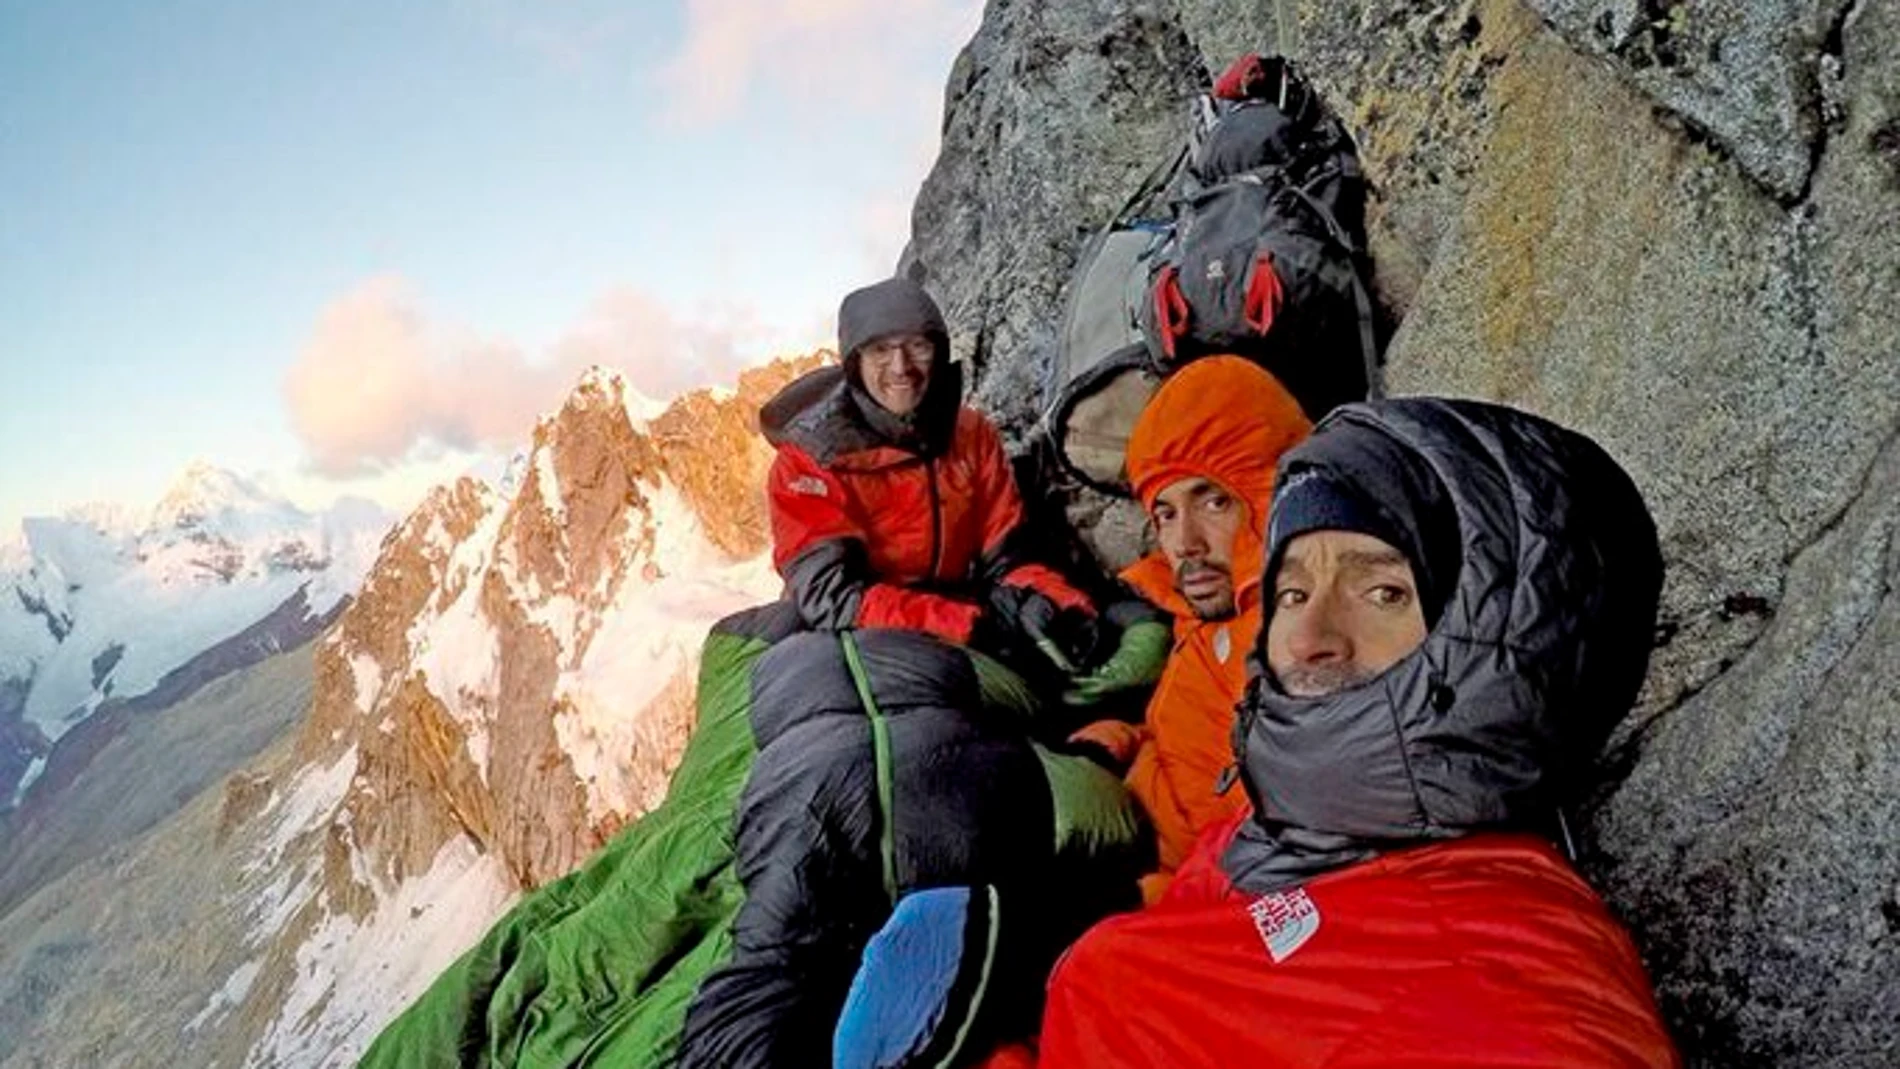 Iker, Eneko Pou y Manu Ponce, escalando la cara norte del Cashan Oeste